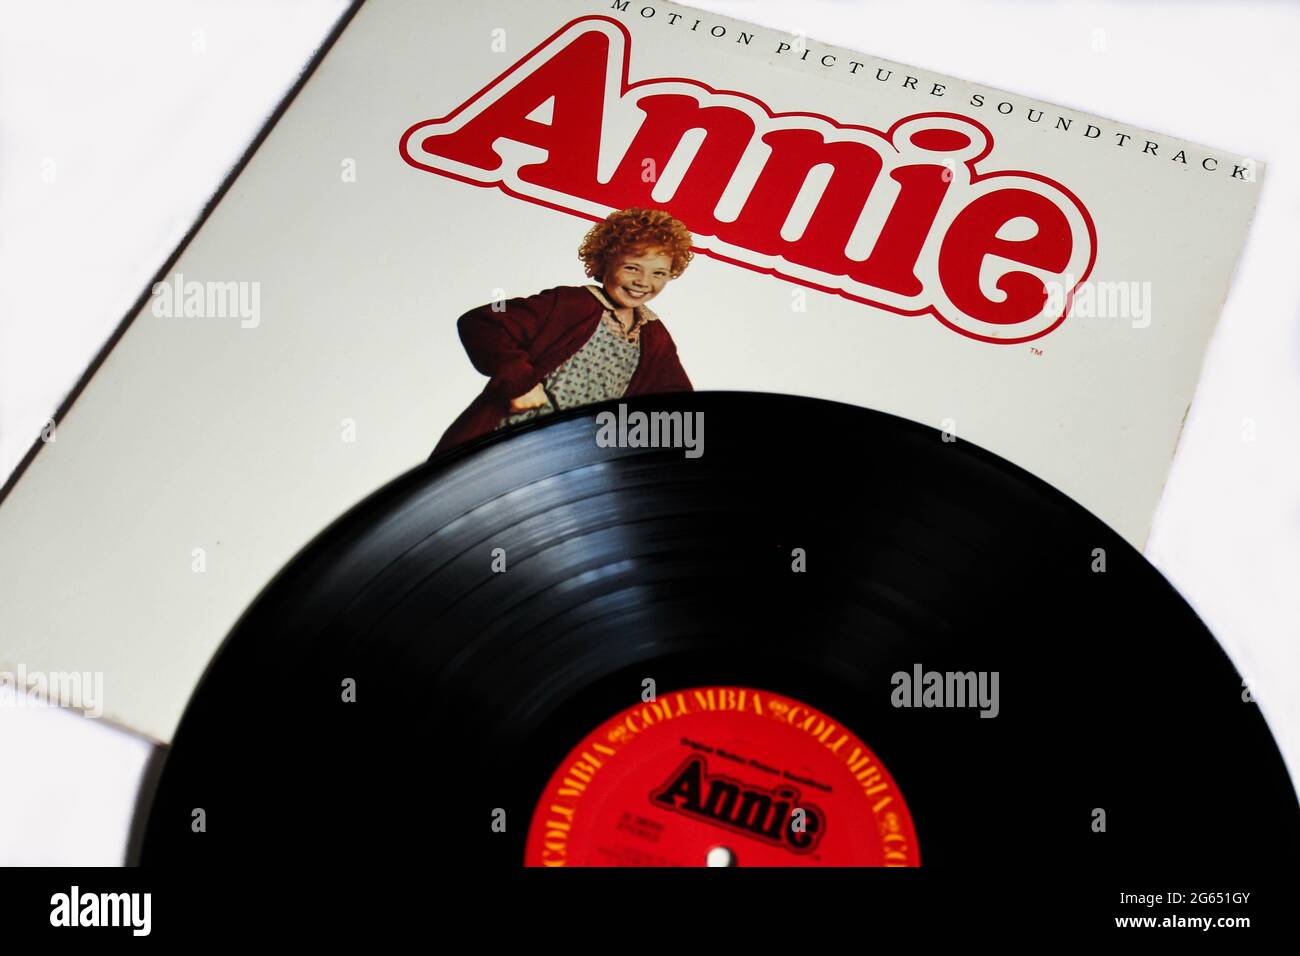 Annie Original Motion Picture Soundtrack-Musikalbum auf Vinyl-Schallplatte. Klassischer Film. Albumcover Stockfoto